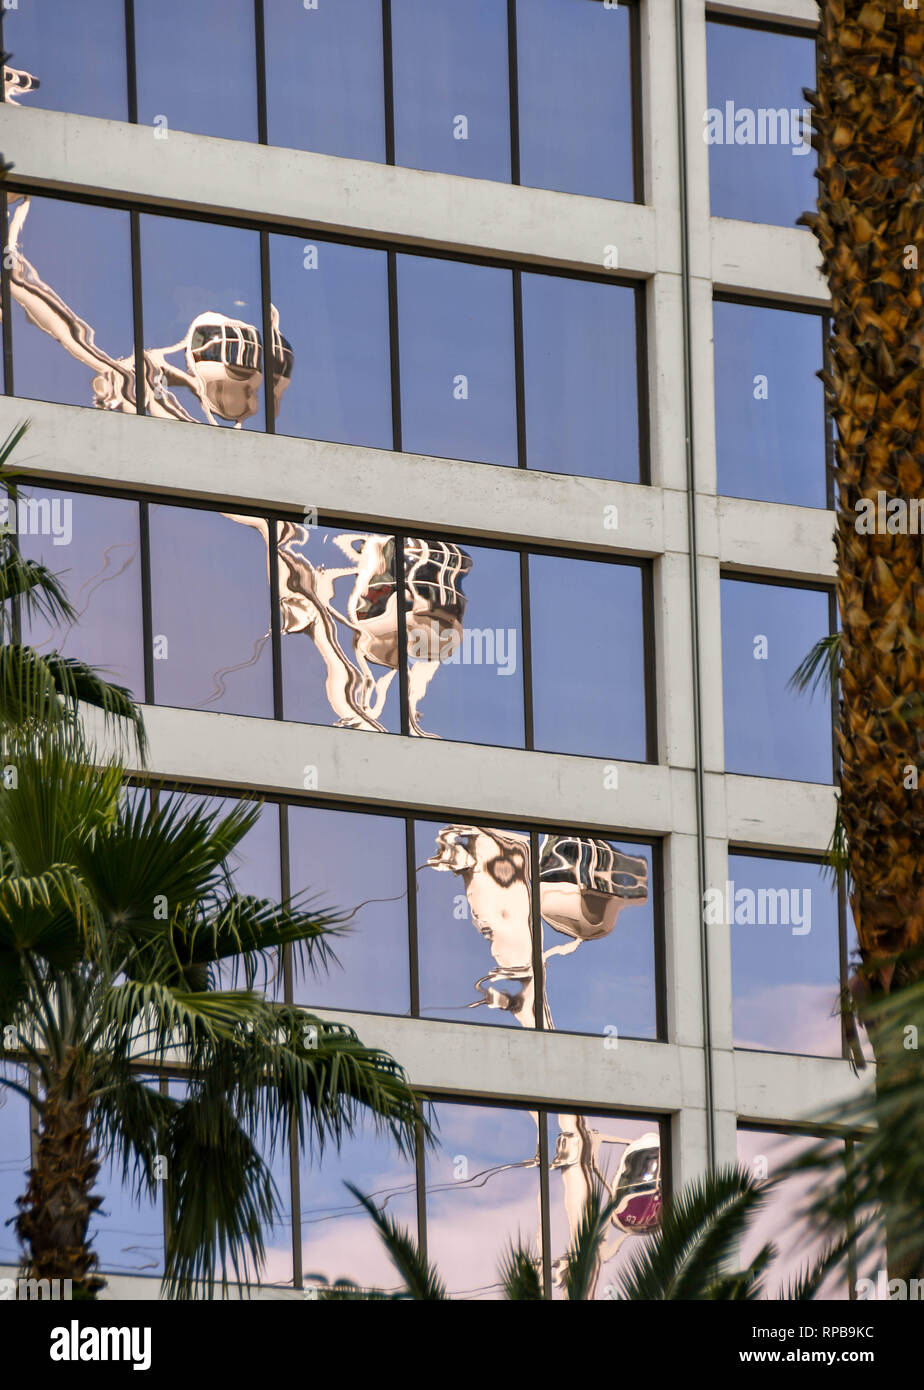 LAS VEGAS, NEVADA - Febbraio 2019: la riflessione di alto rullo ruota gigante ride in mirroring windows del Flamingo Hotel di Las Vegas. Foto Stock